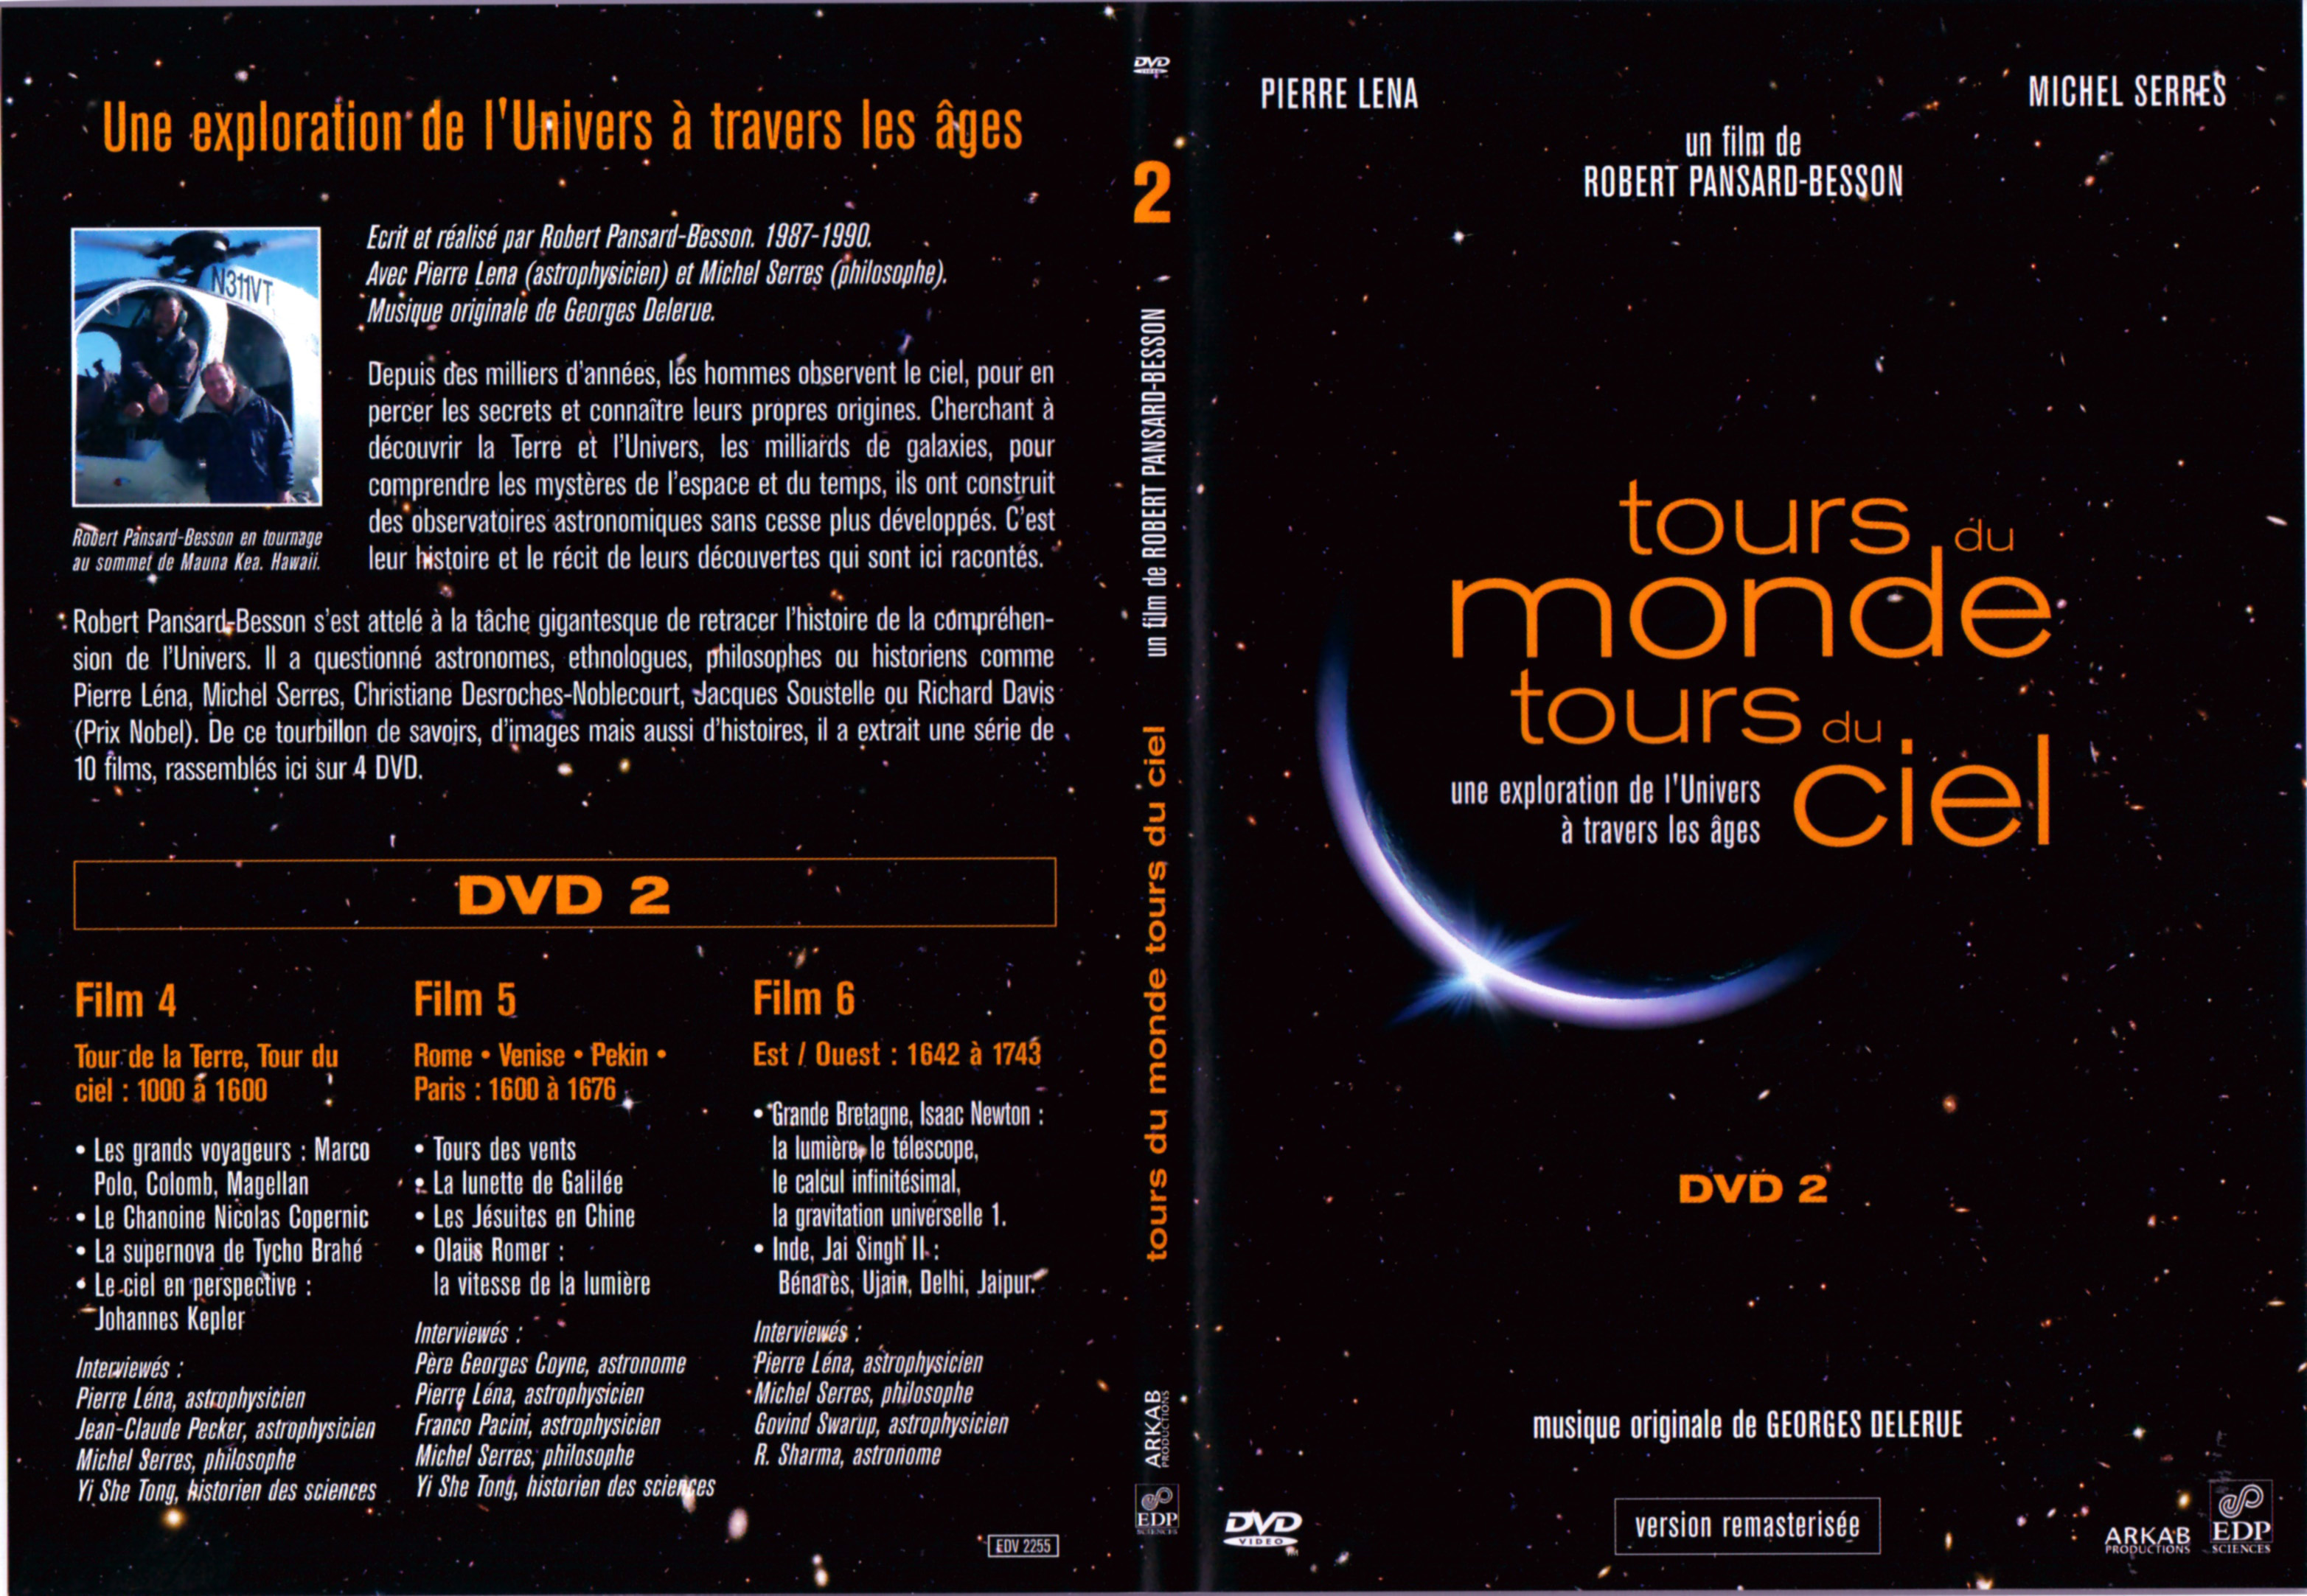 Jaquette DVD Tours du monde Tours du ciel DVD 2